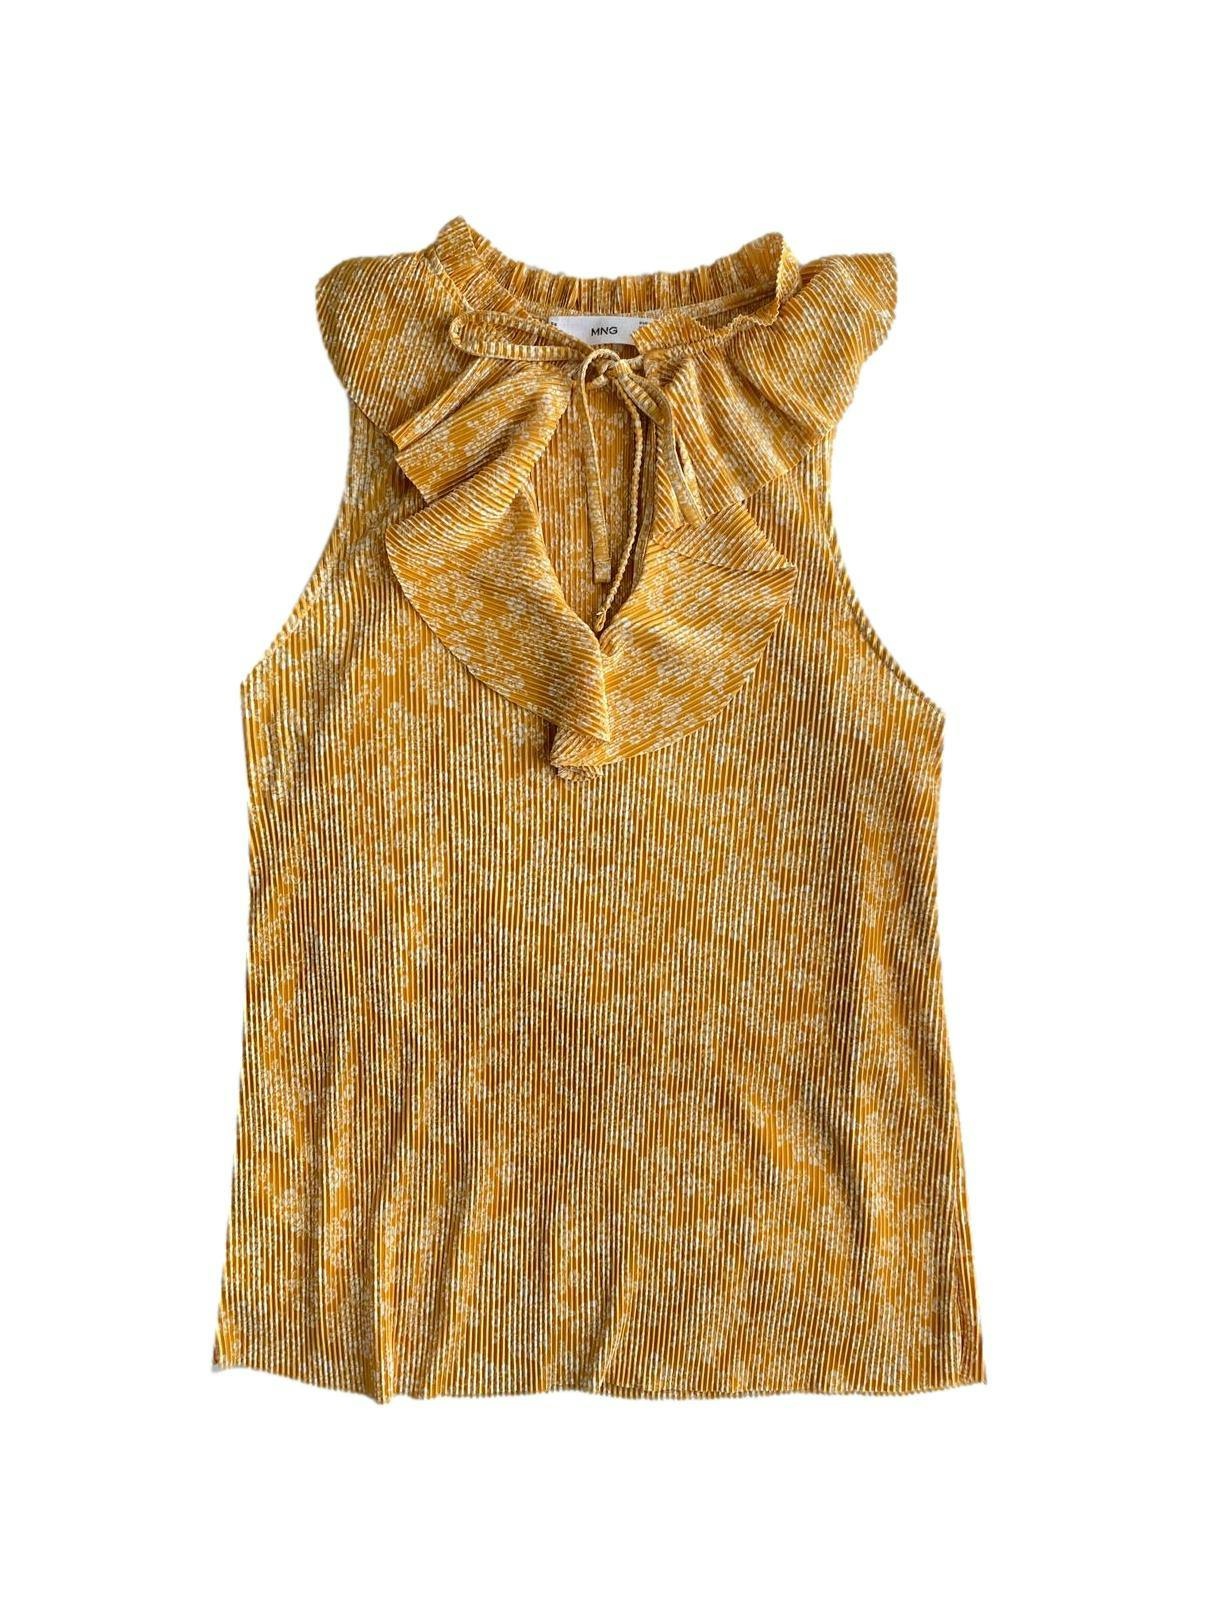 Blusa mango amarilla satinada, escote v, manga cero con print de flores blancas, tela plisada, vuelos en escote. Busto: 84cm, largo: 62cm.